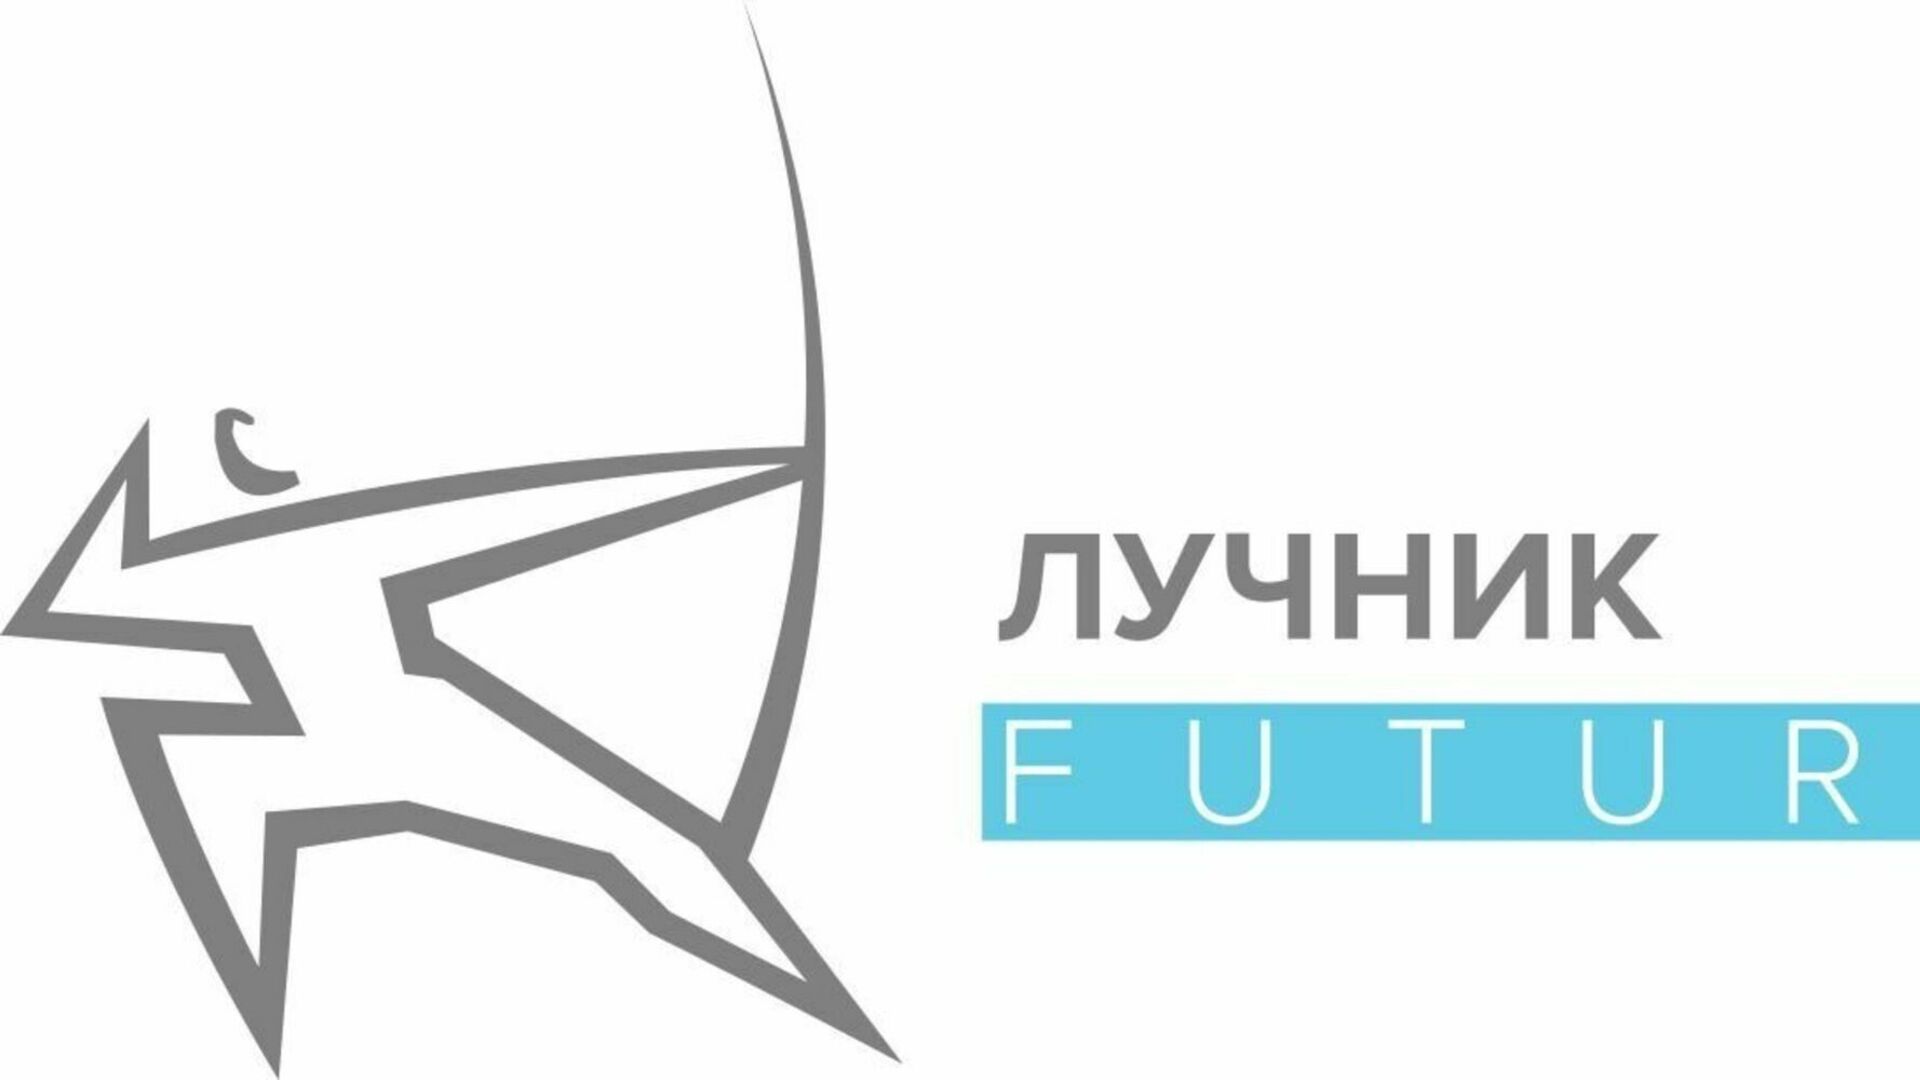 Организаторы «Лучник Future» заявили о завершении приема заявок на участие